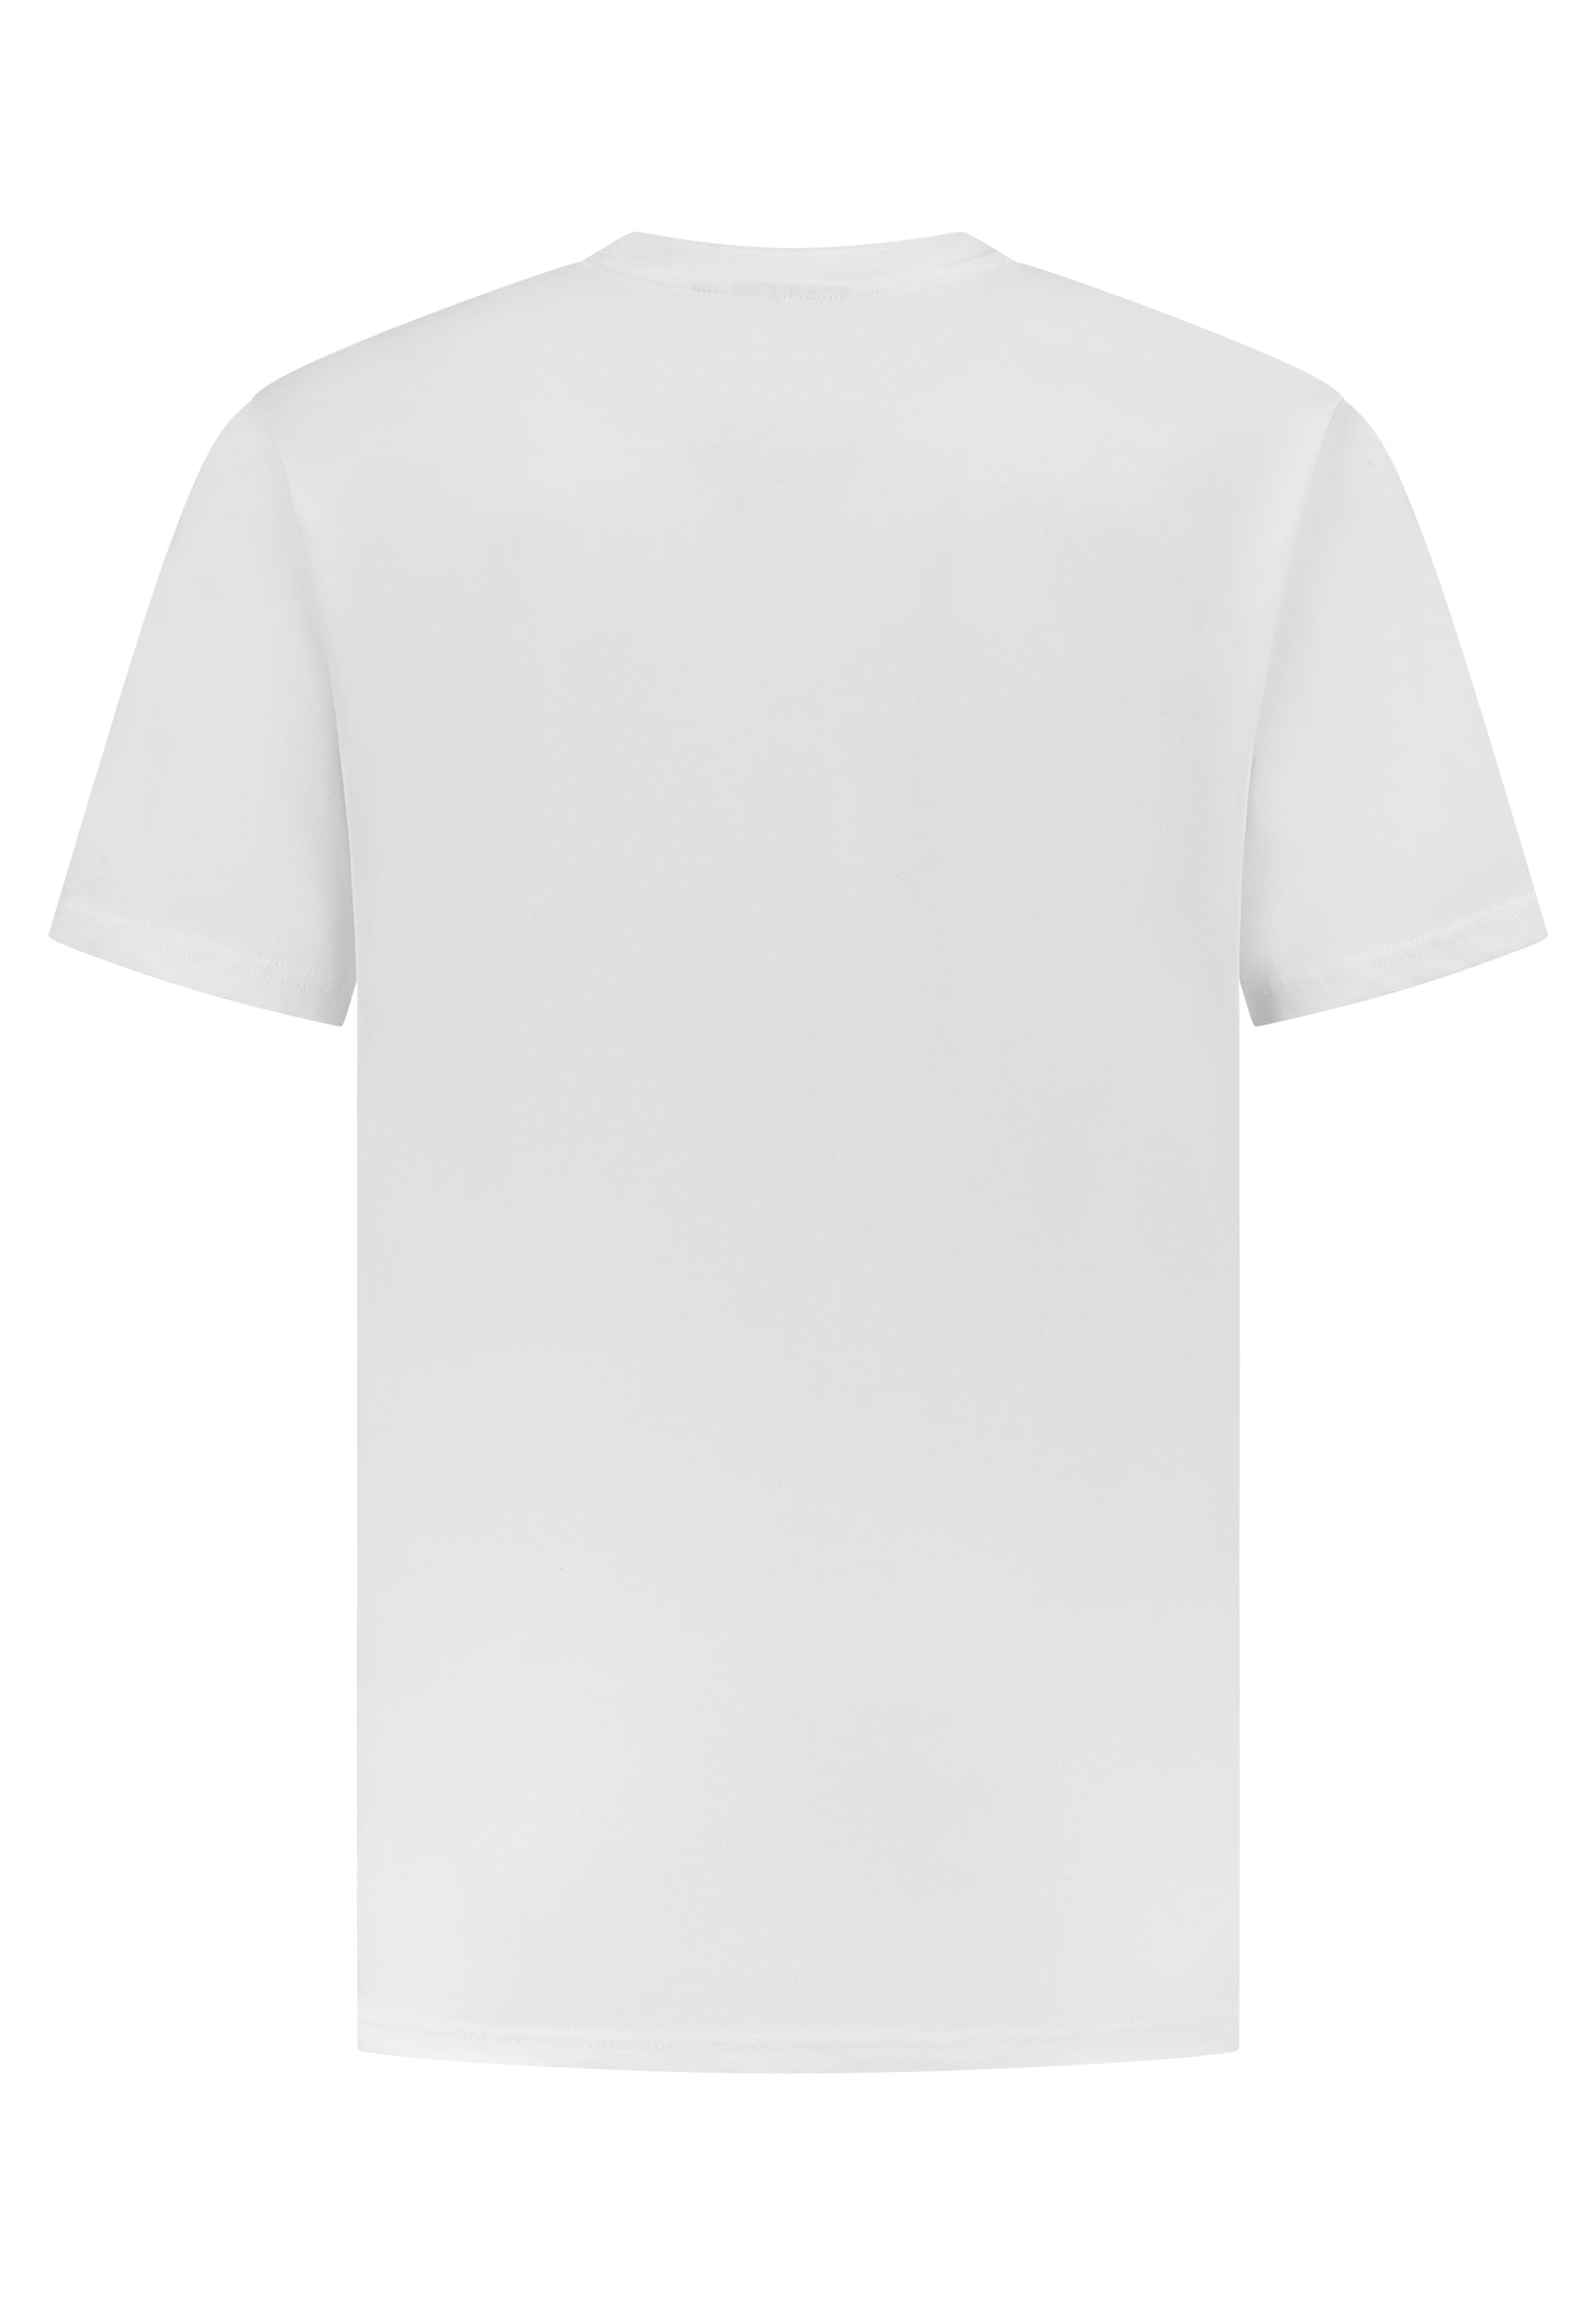 Molair T-Shirt Sao Tome Tee White